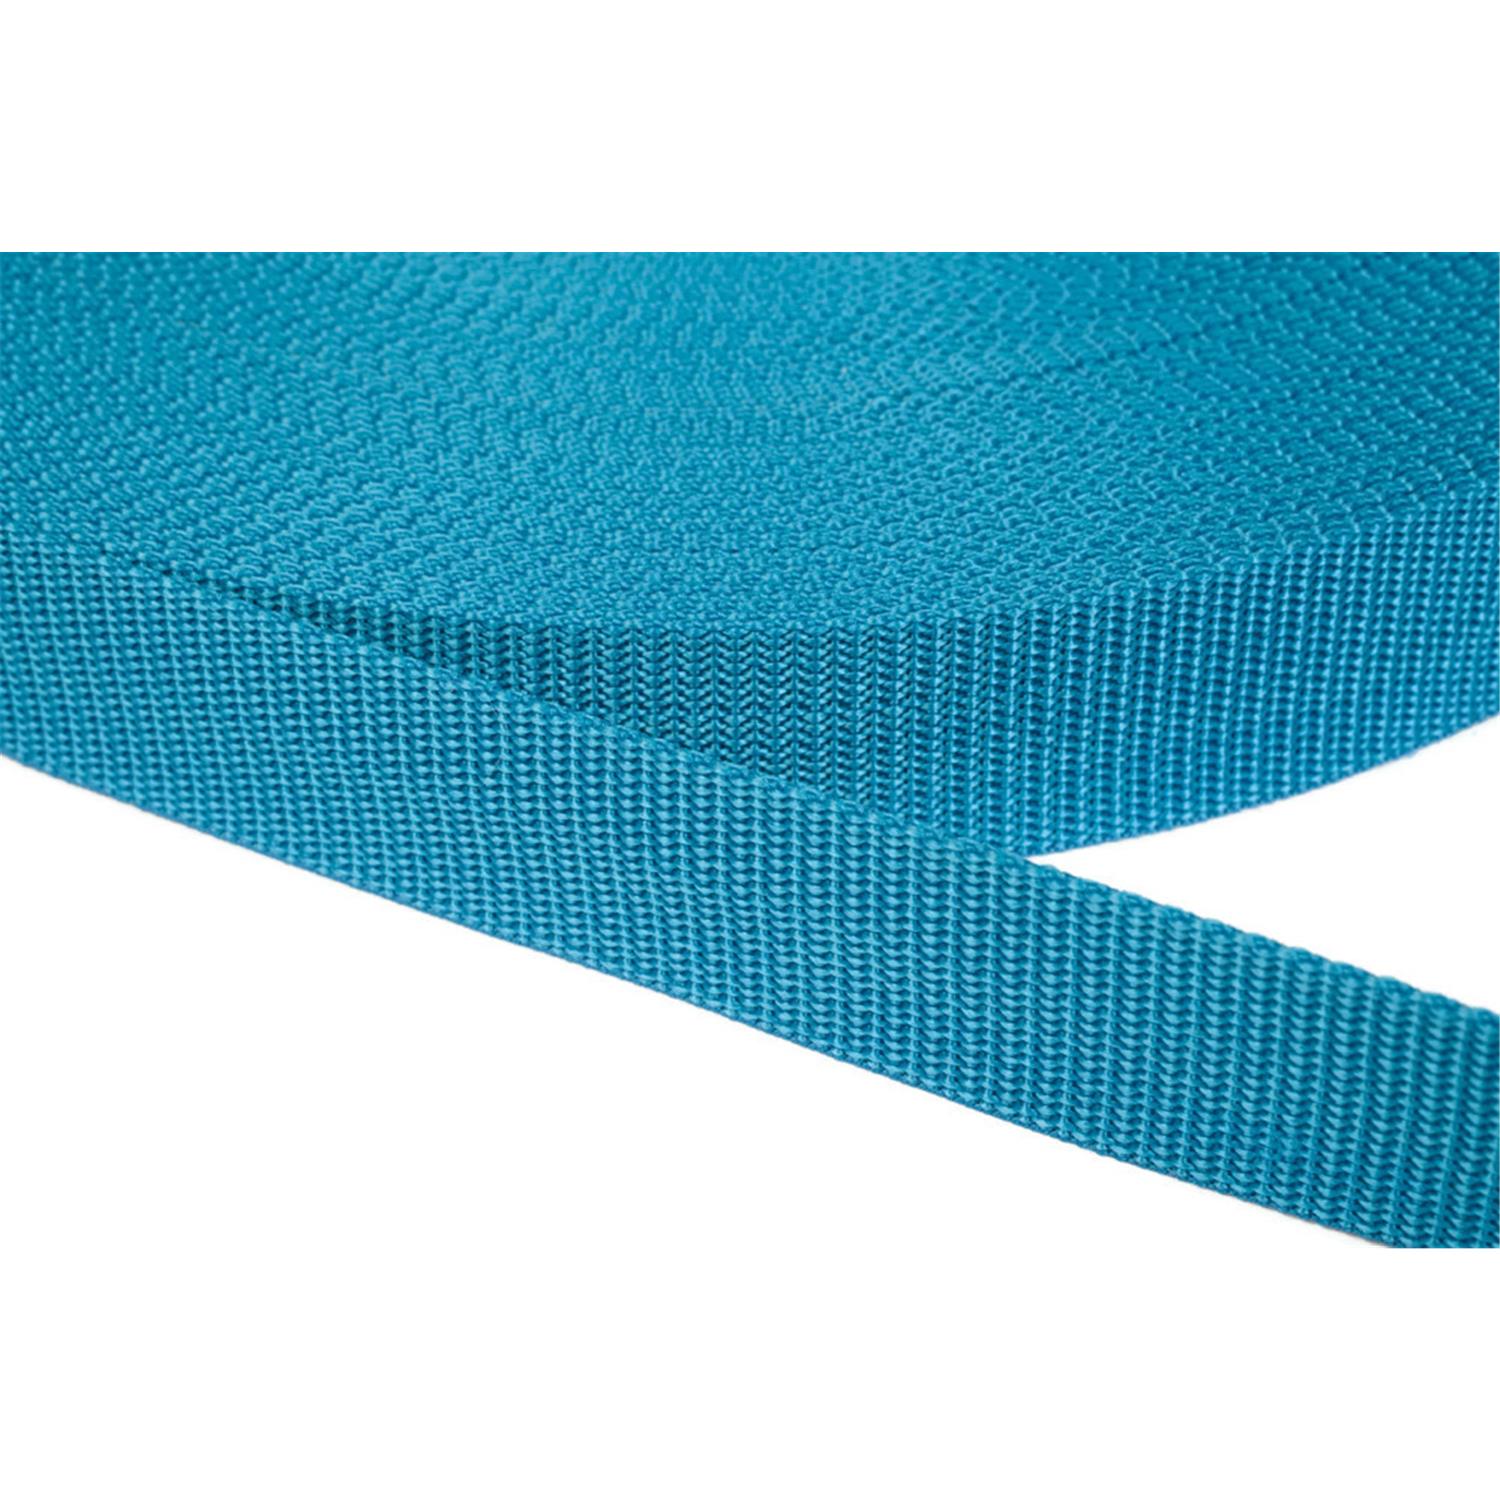 Gurtband 40mm breit aus Polypropylen in 41 Farben 29 - türkis 50 Meter